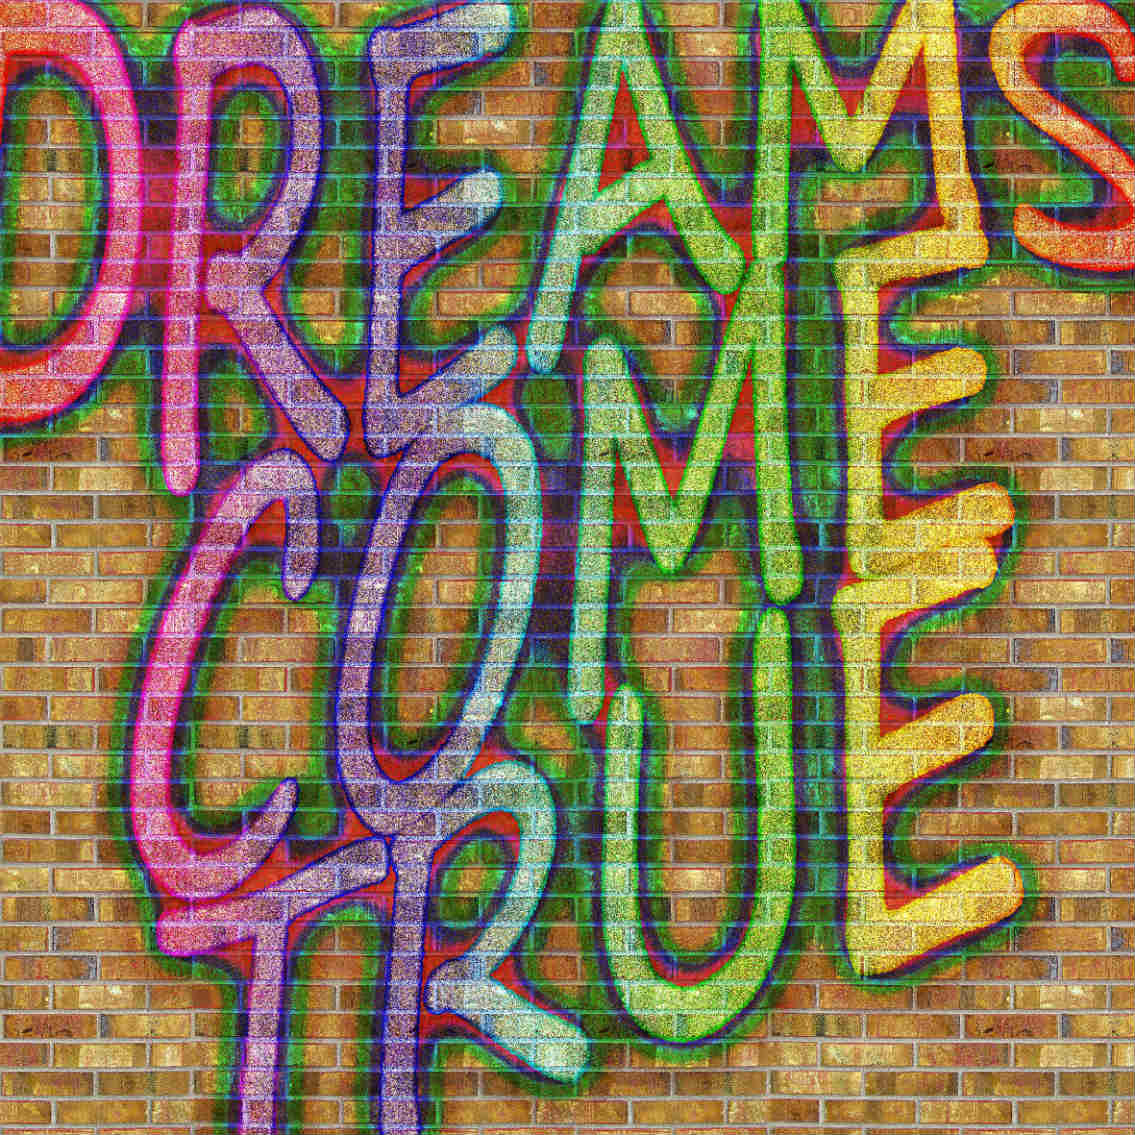 Crowdfunding e Social Network - immagine di scritta su muro "dreams come true"